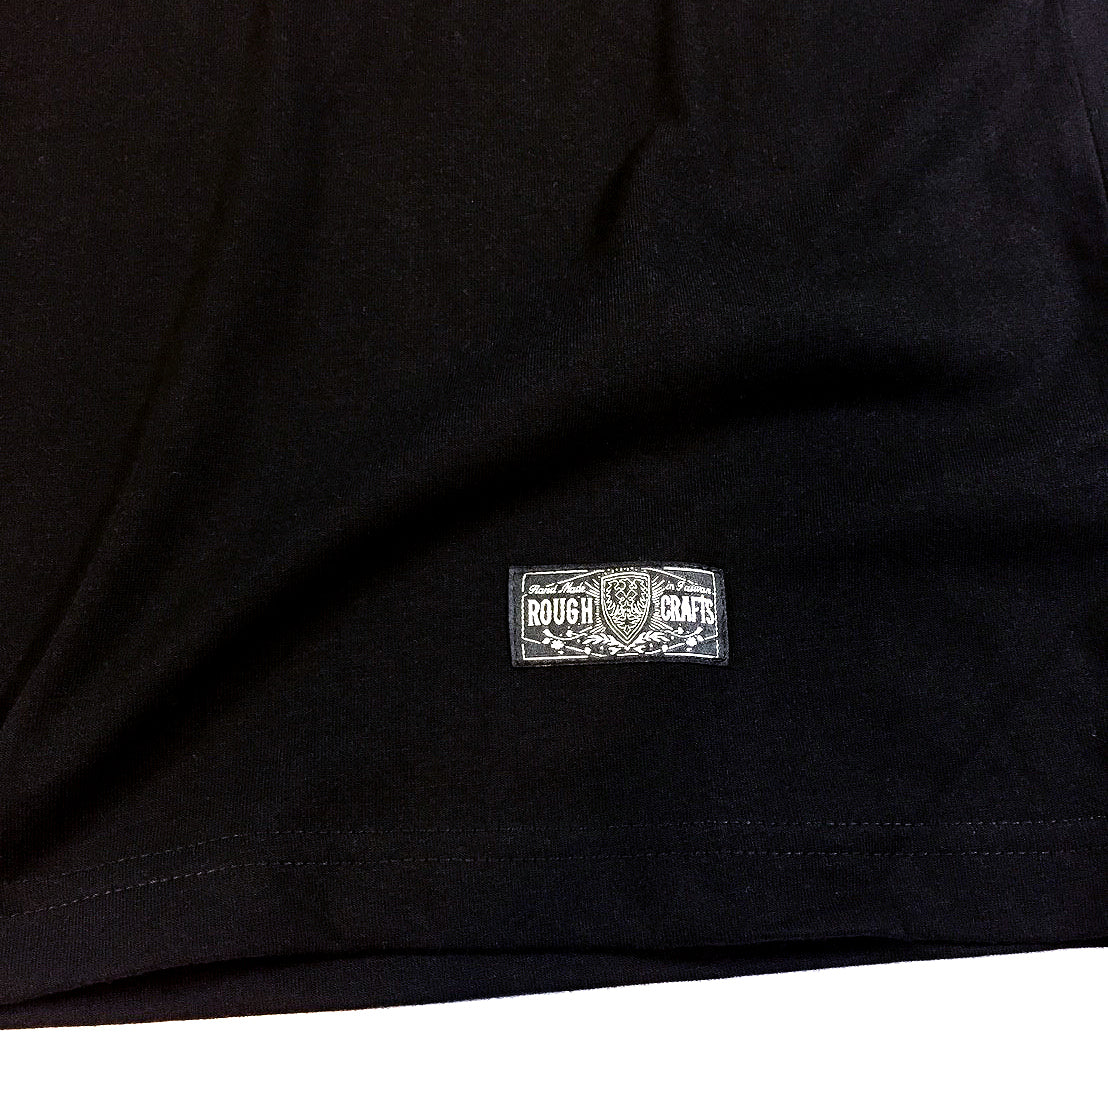 ROUGH CRAFTS RAGING DAGGER Short Sleeve T-Shirt